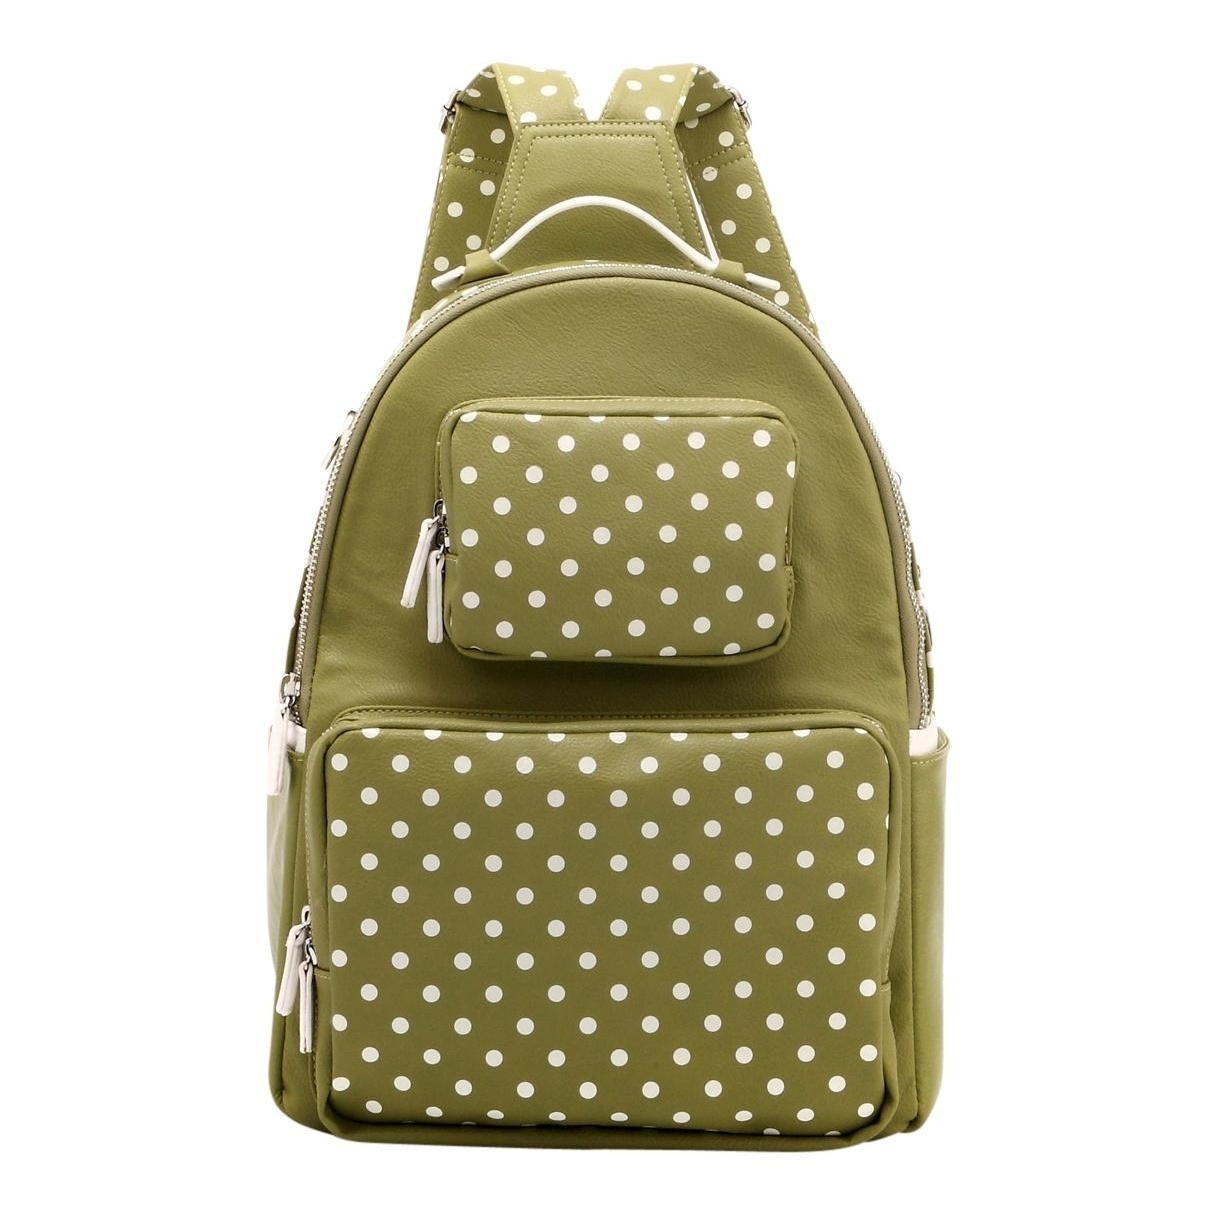 SCORE! Natalie Michelle Medium Polka Dot Designer Backpack - Olive Green And White